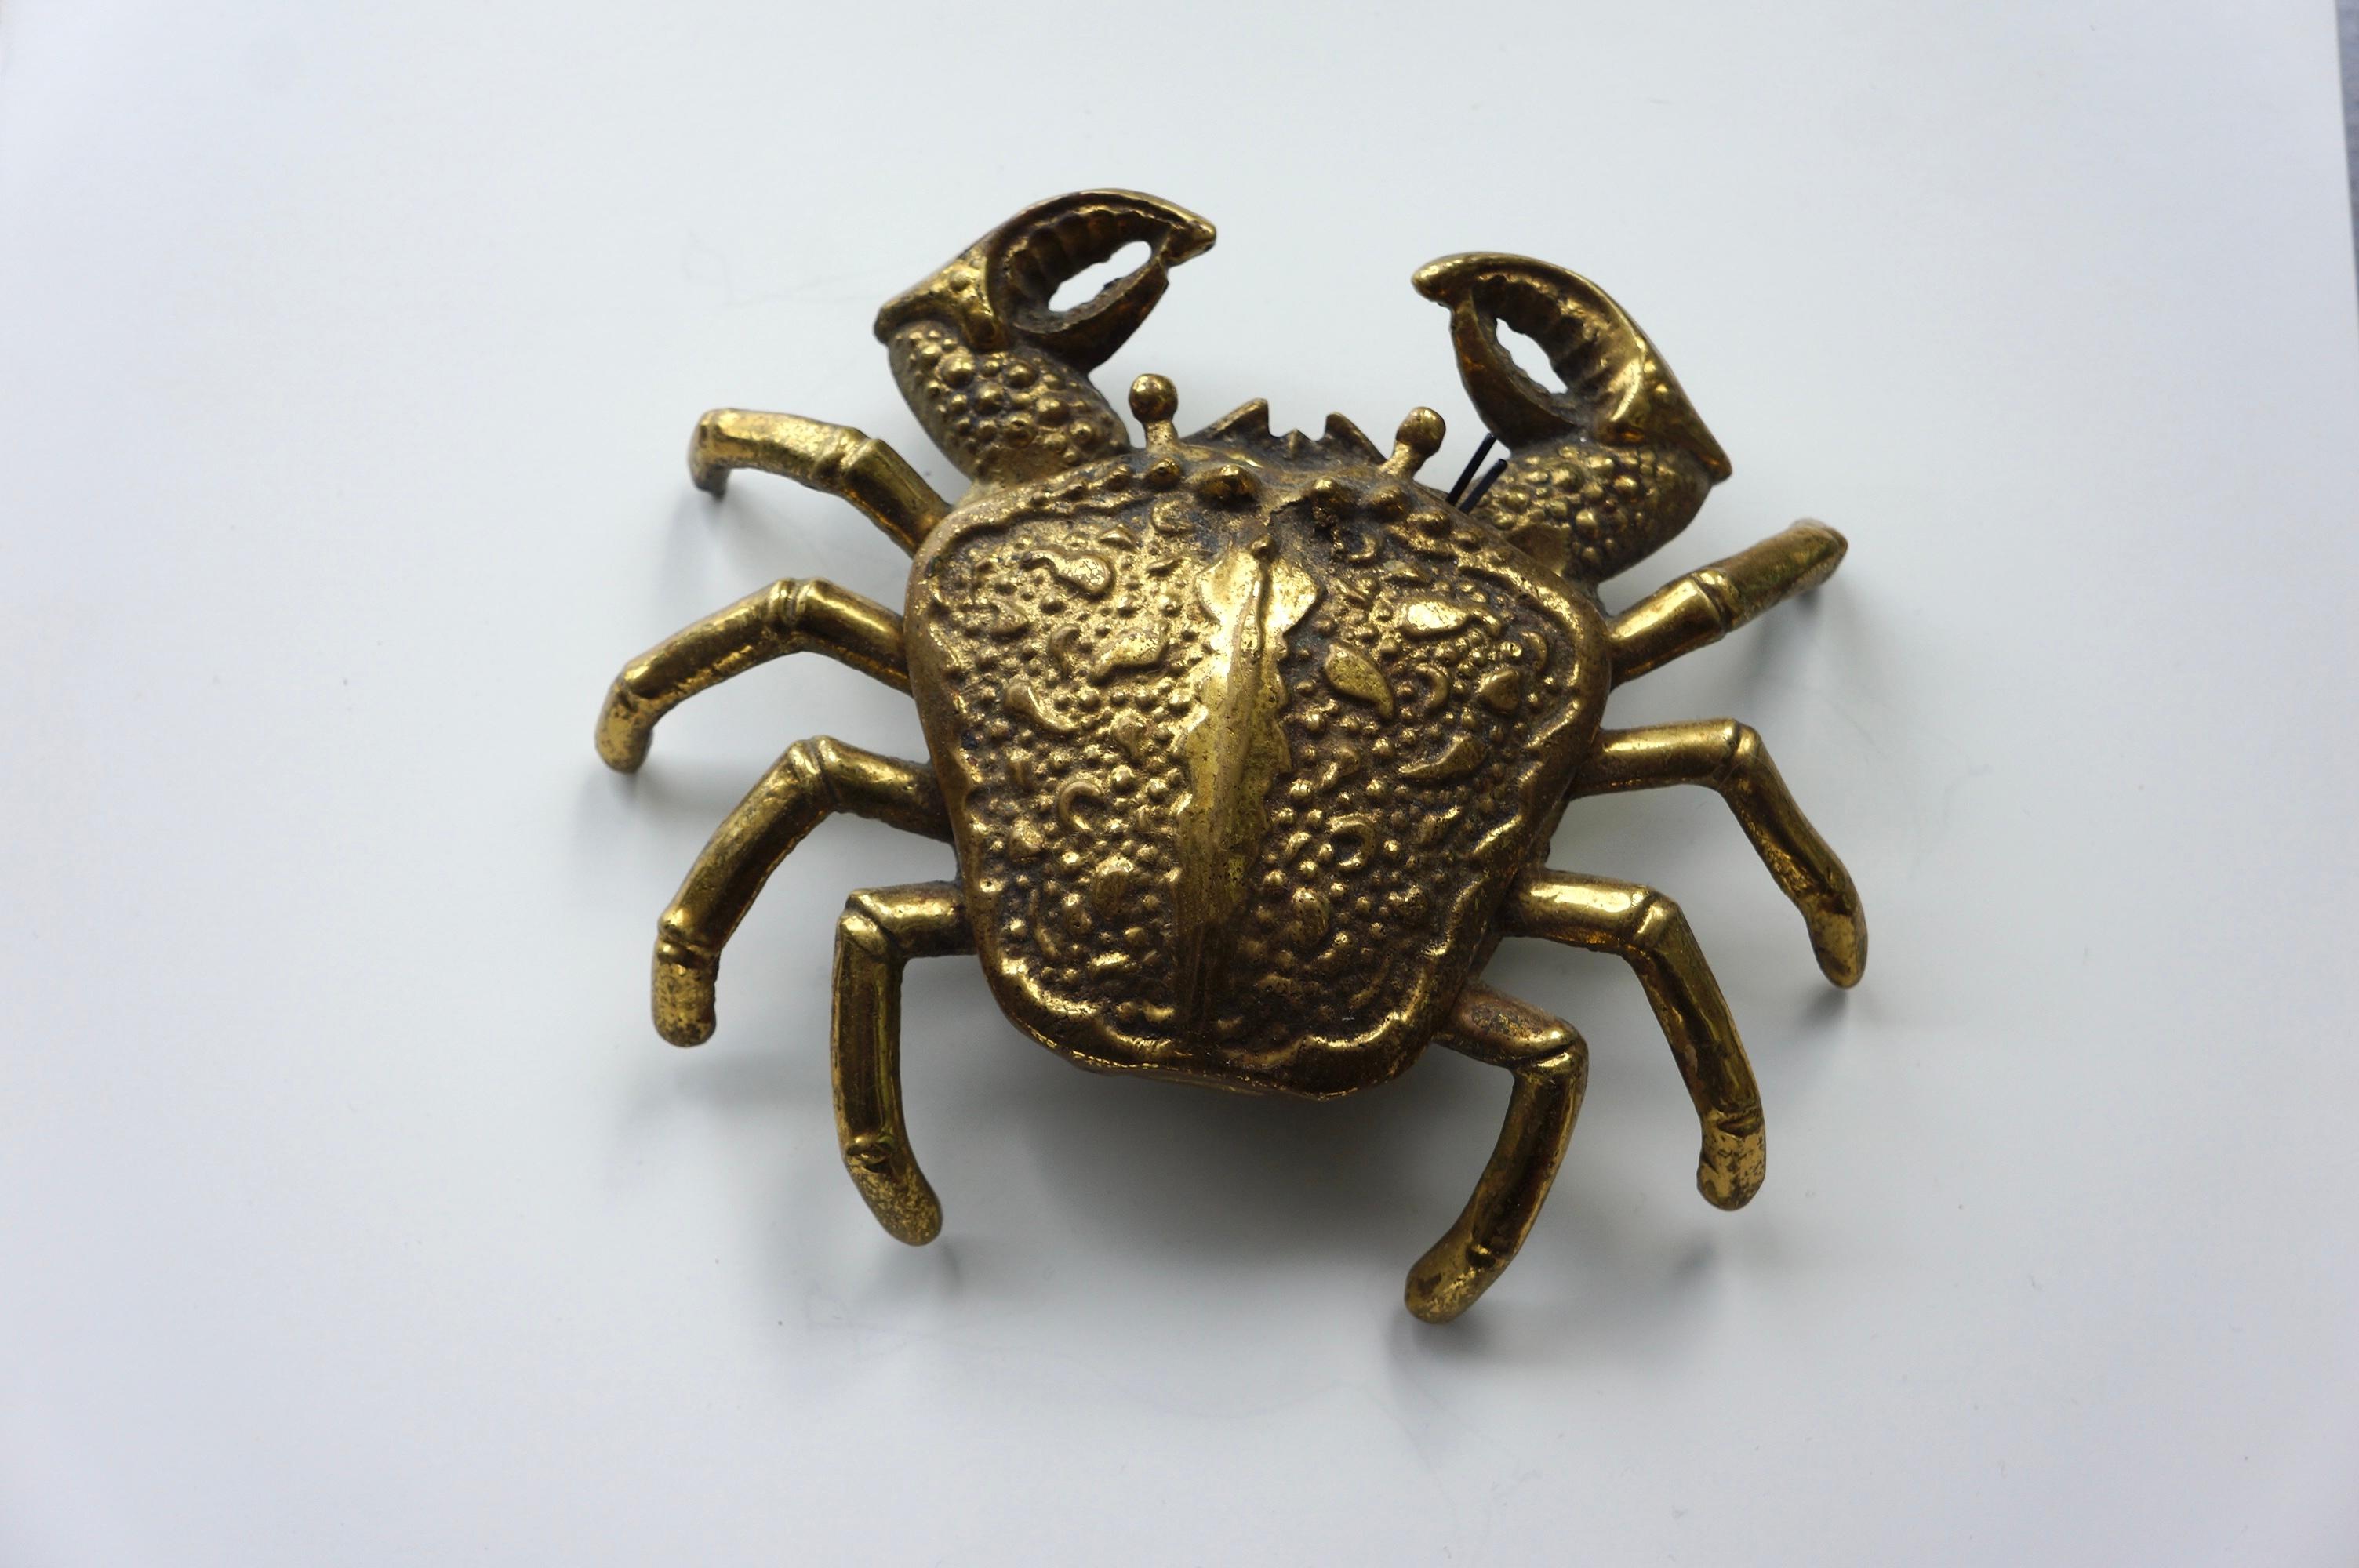 Objet décoratif et cendrier en laiton en forme de crabe. Il s'agit d'une finition en laiton avec une belle patine naturelle. La tête et le corps du crabe sont ornés de détails. Le corps est muni d'un couvercle et peut être ouvert et fermé.